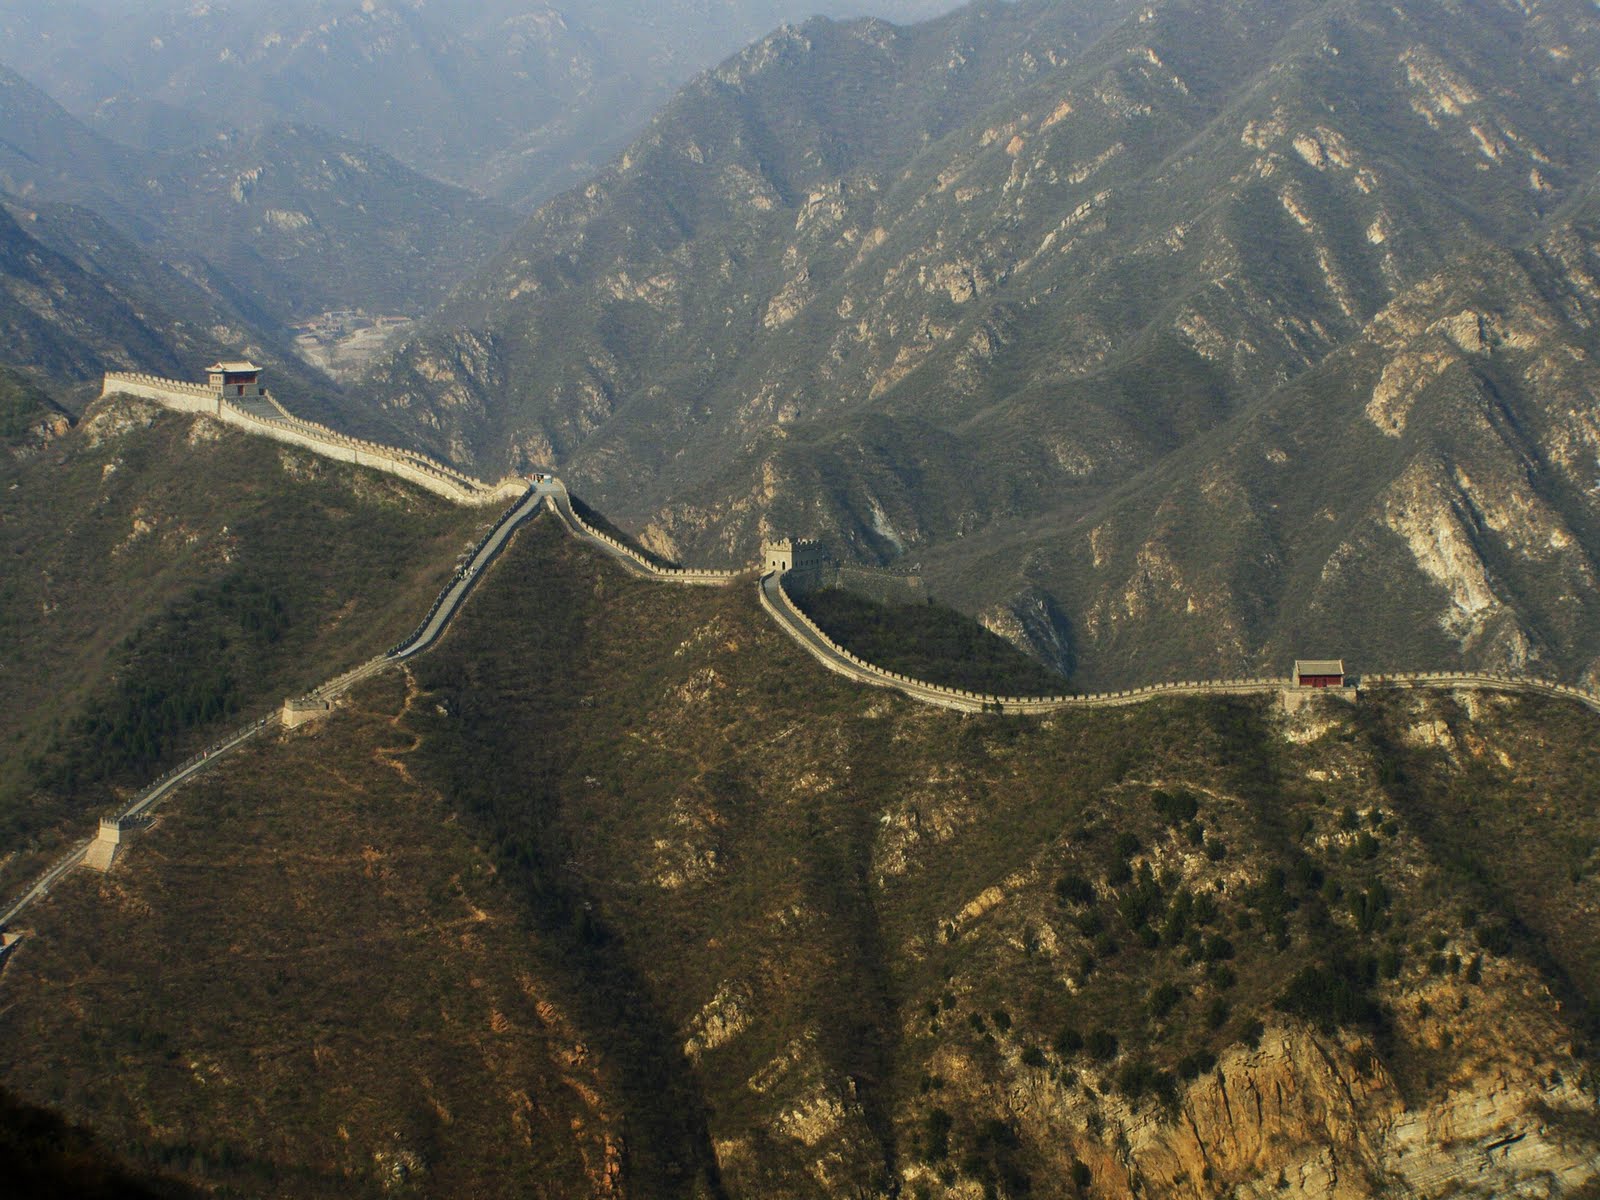 Wall of china view